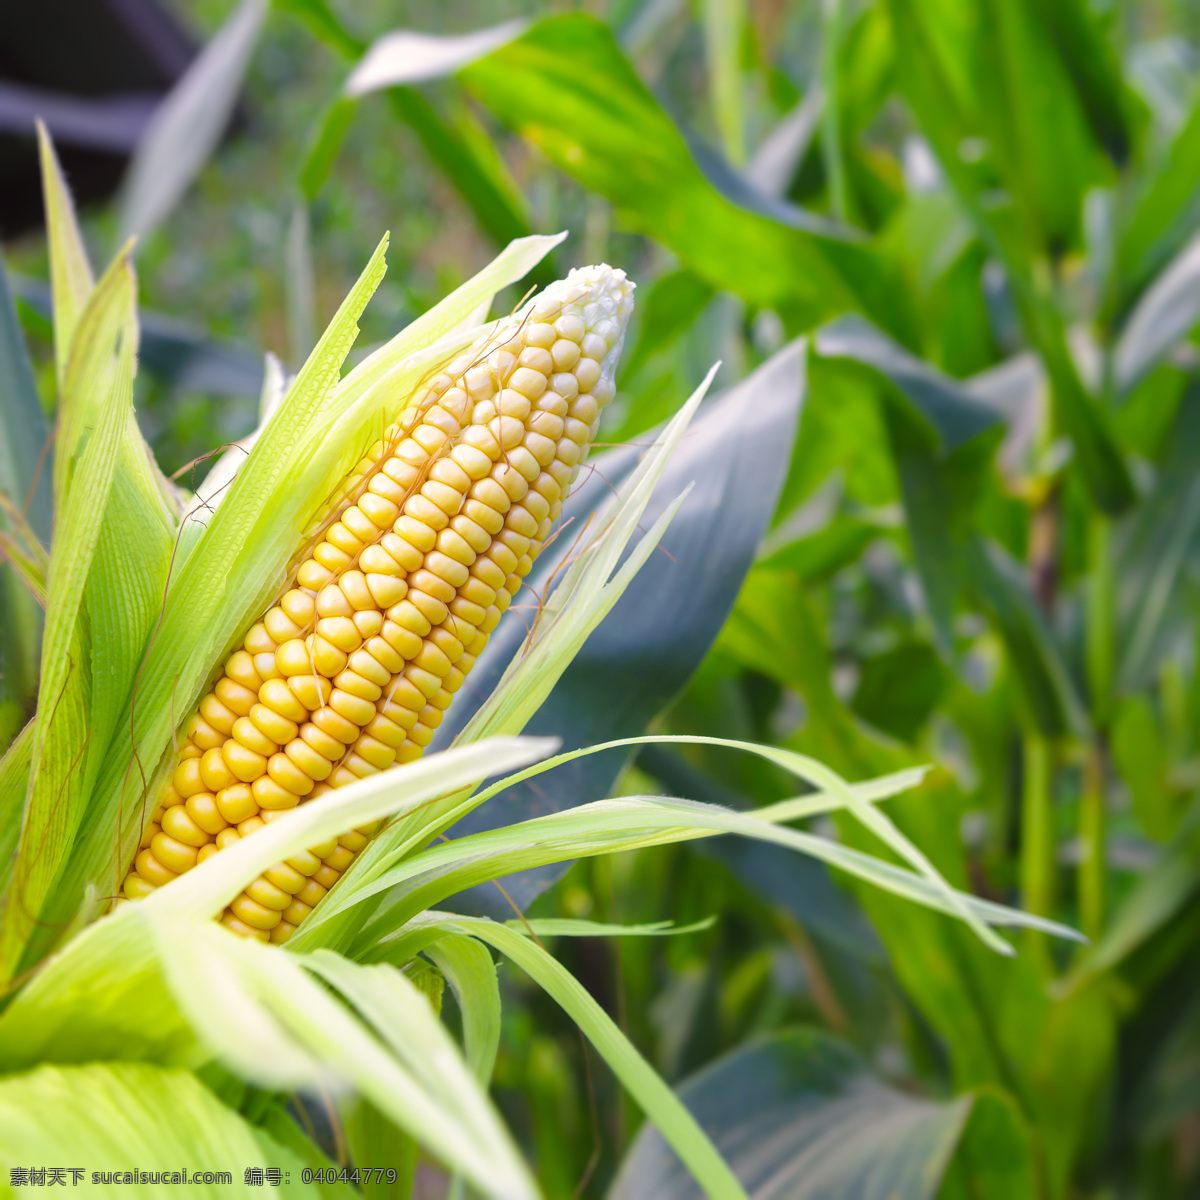 玉米 玉米棒子 苞谷 新鲜玉米 玉米摄影 农业生产 现代科技